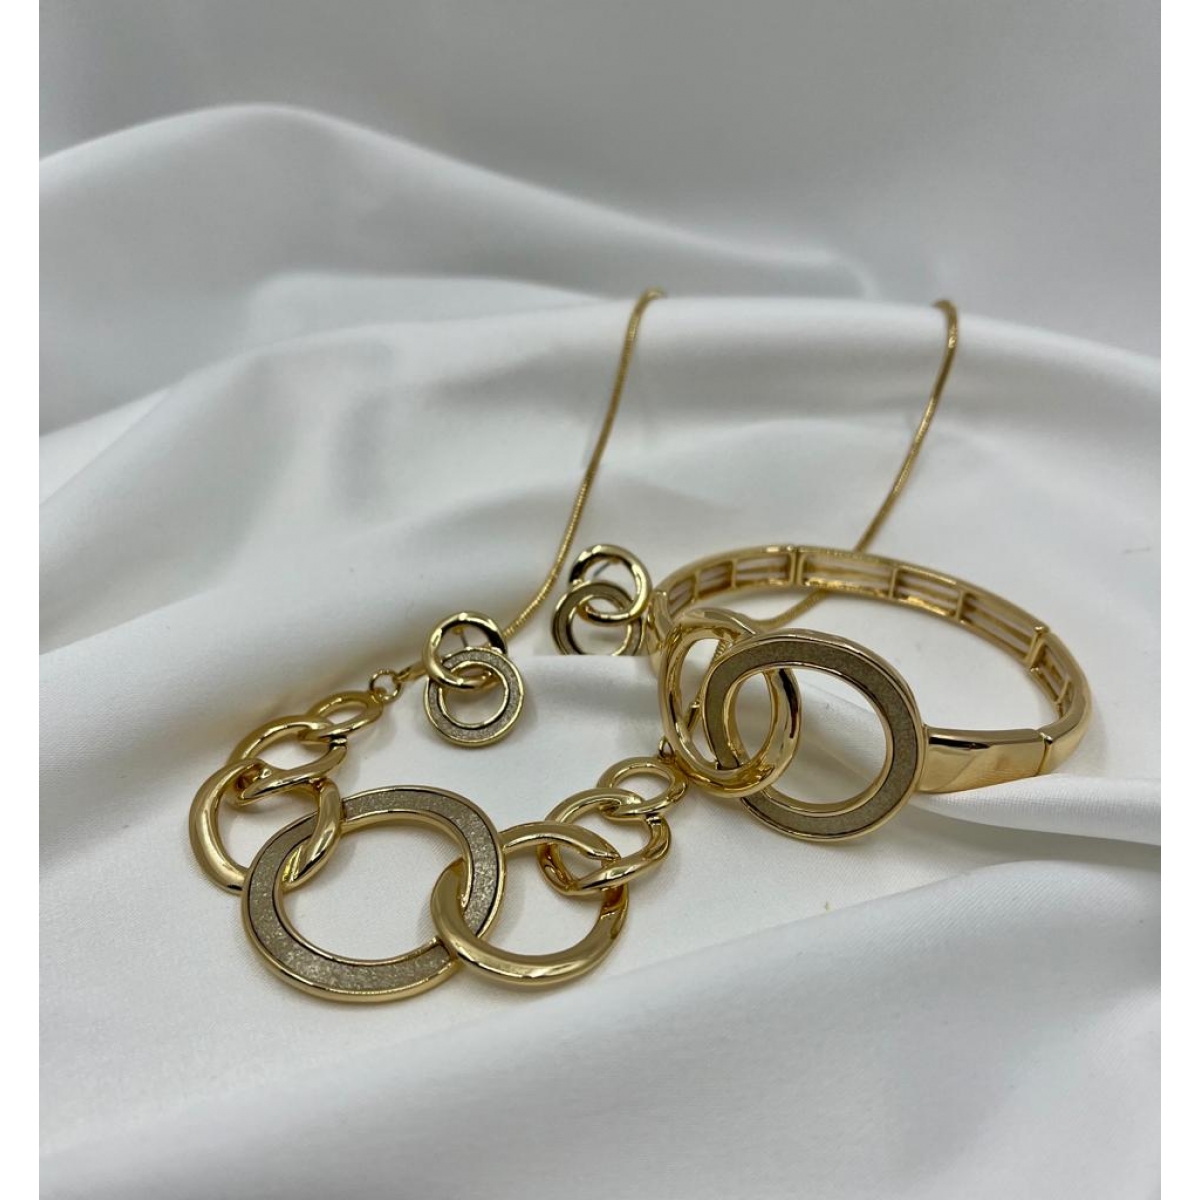 Súprava pozlátená náhrdelníka , náušníc a náramkov zdobená so spojeným kruhovým vzorom